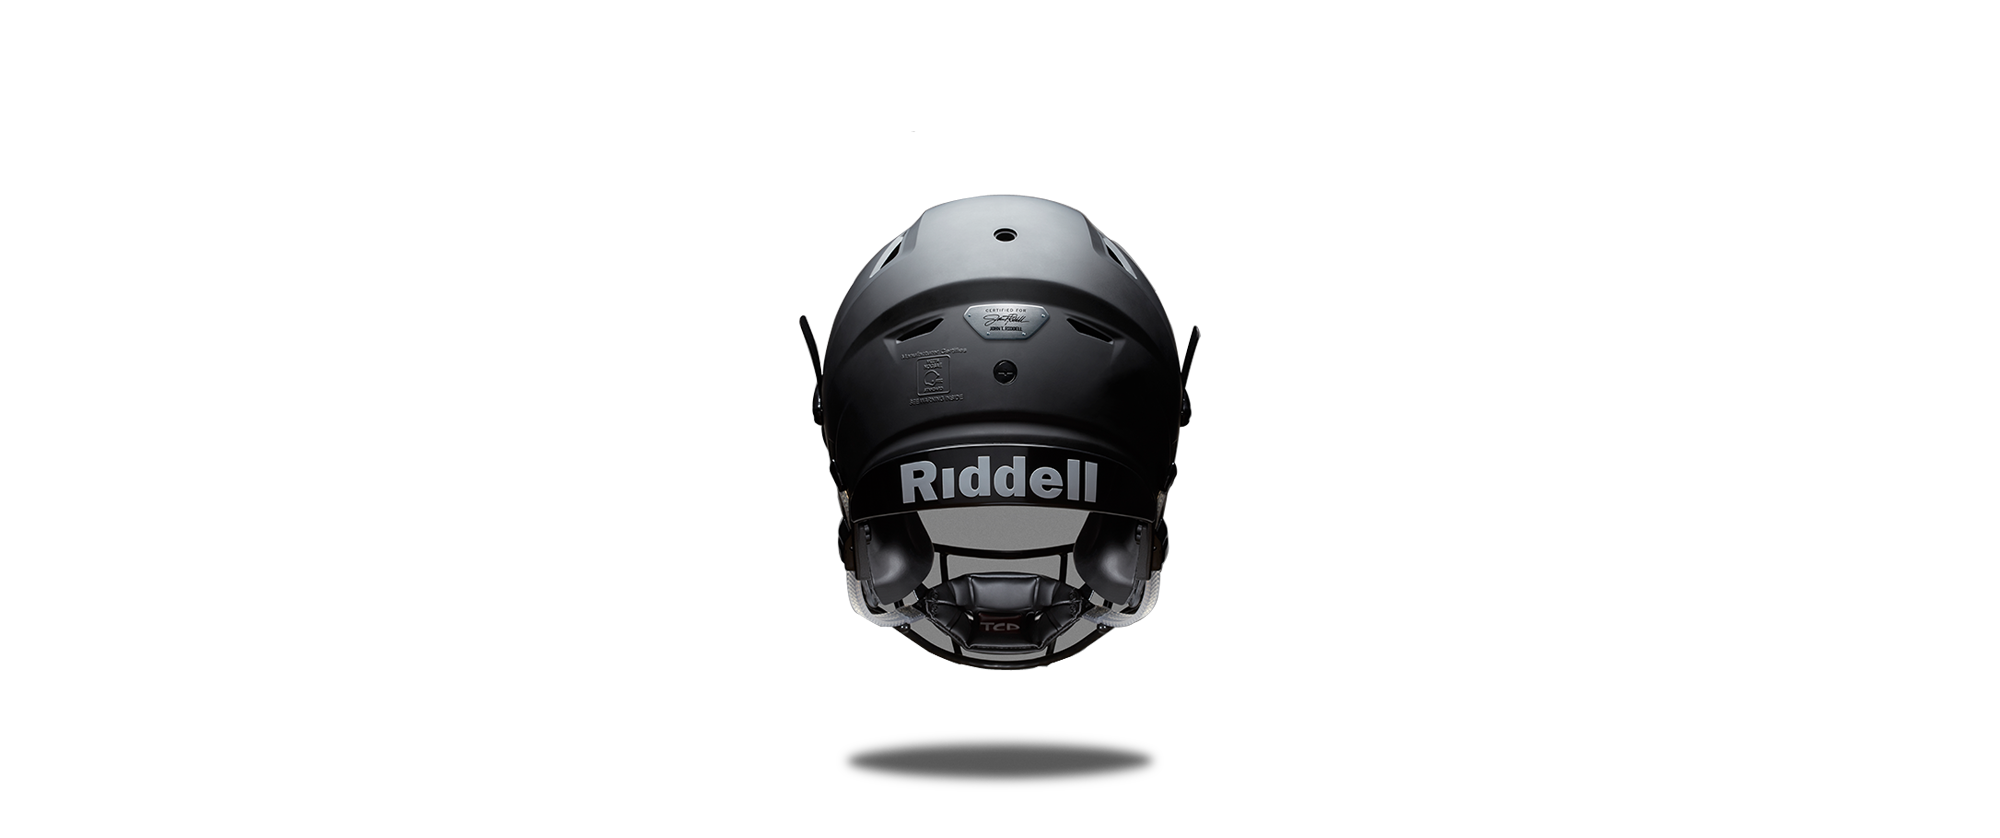 Football Helmet Riddell SpeedFlex